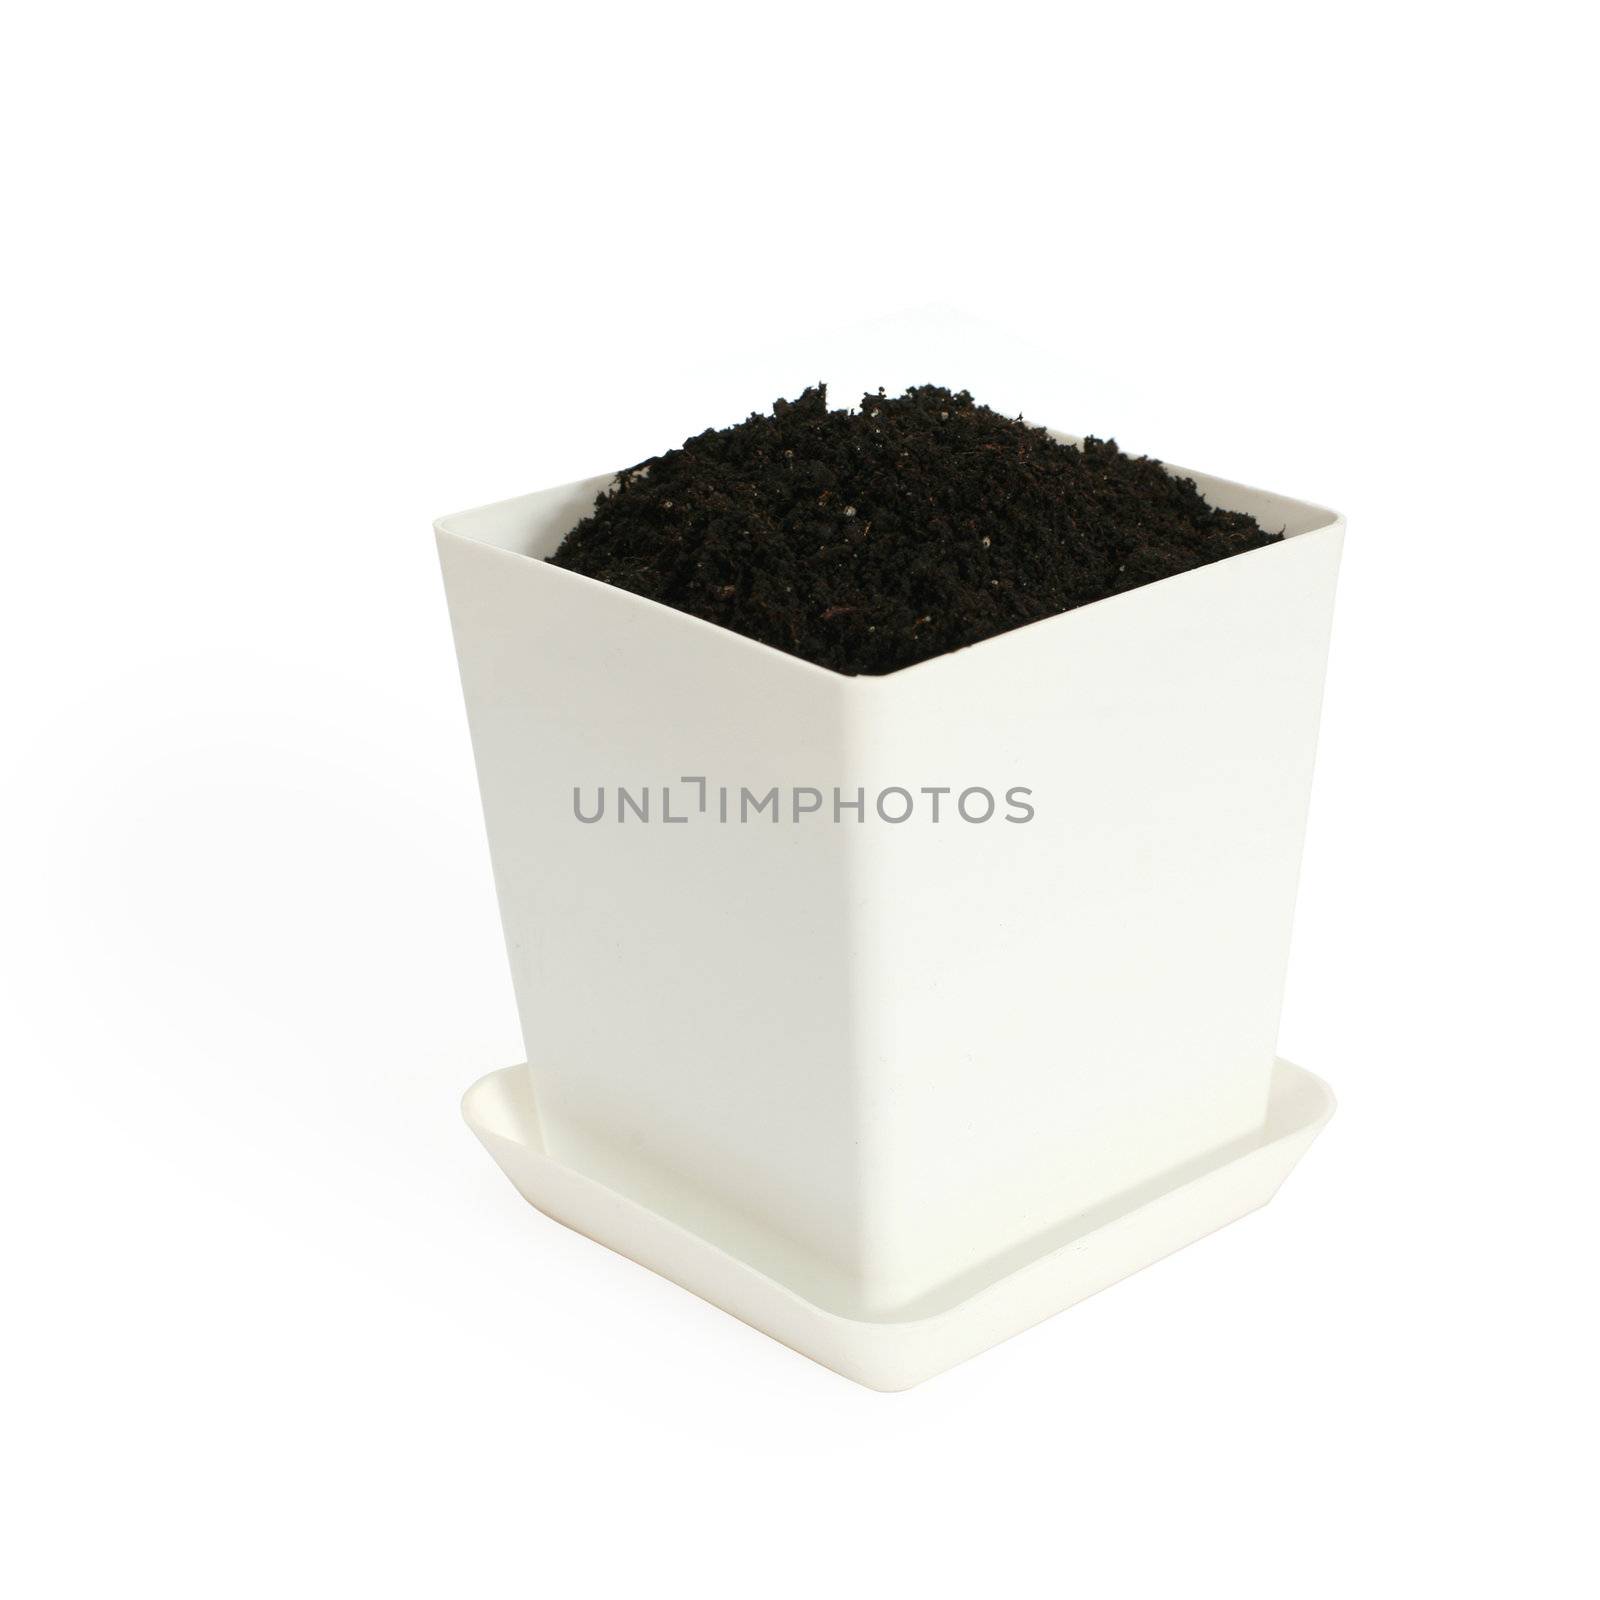 An image of a little white flowerpot